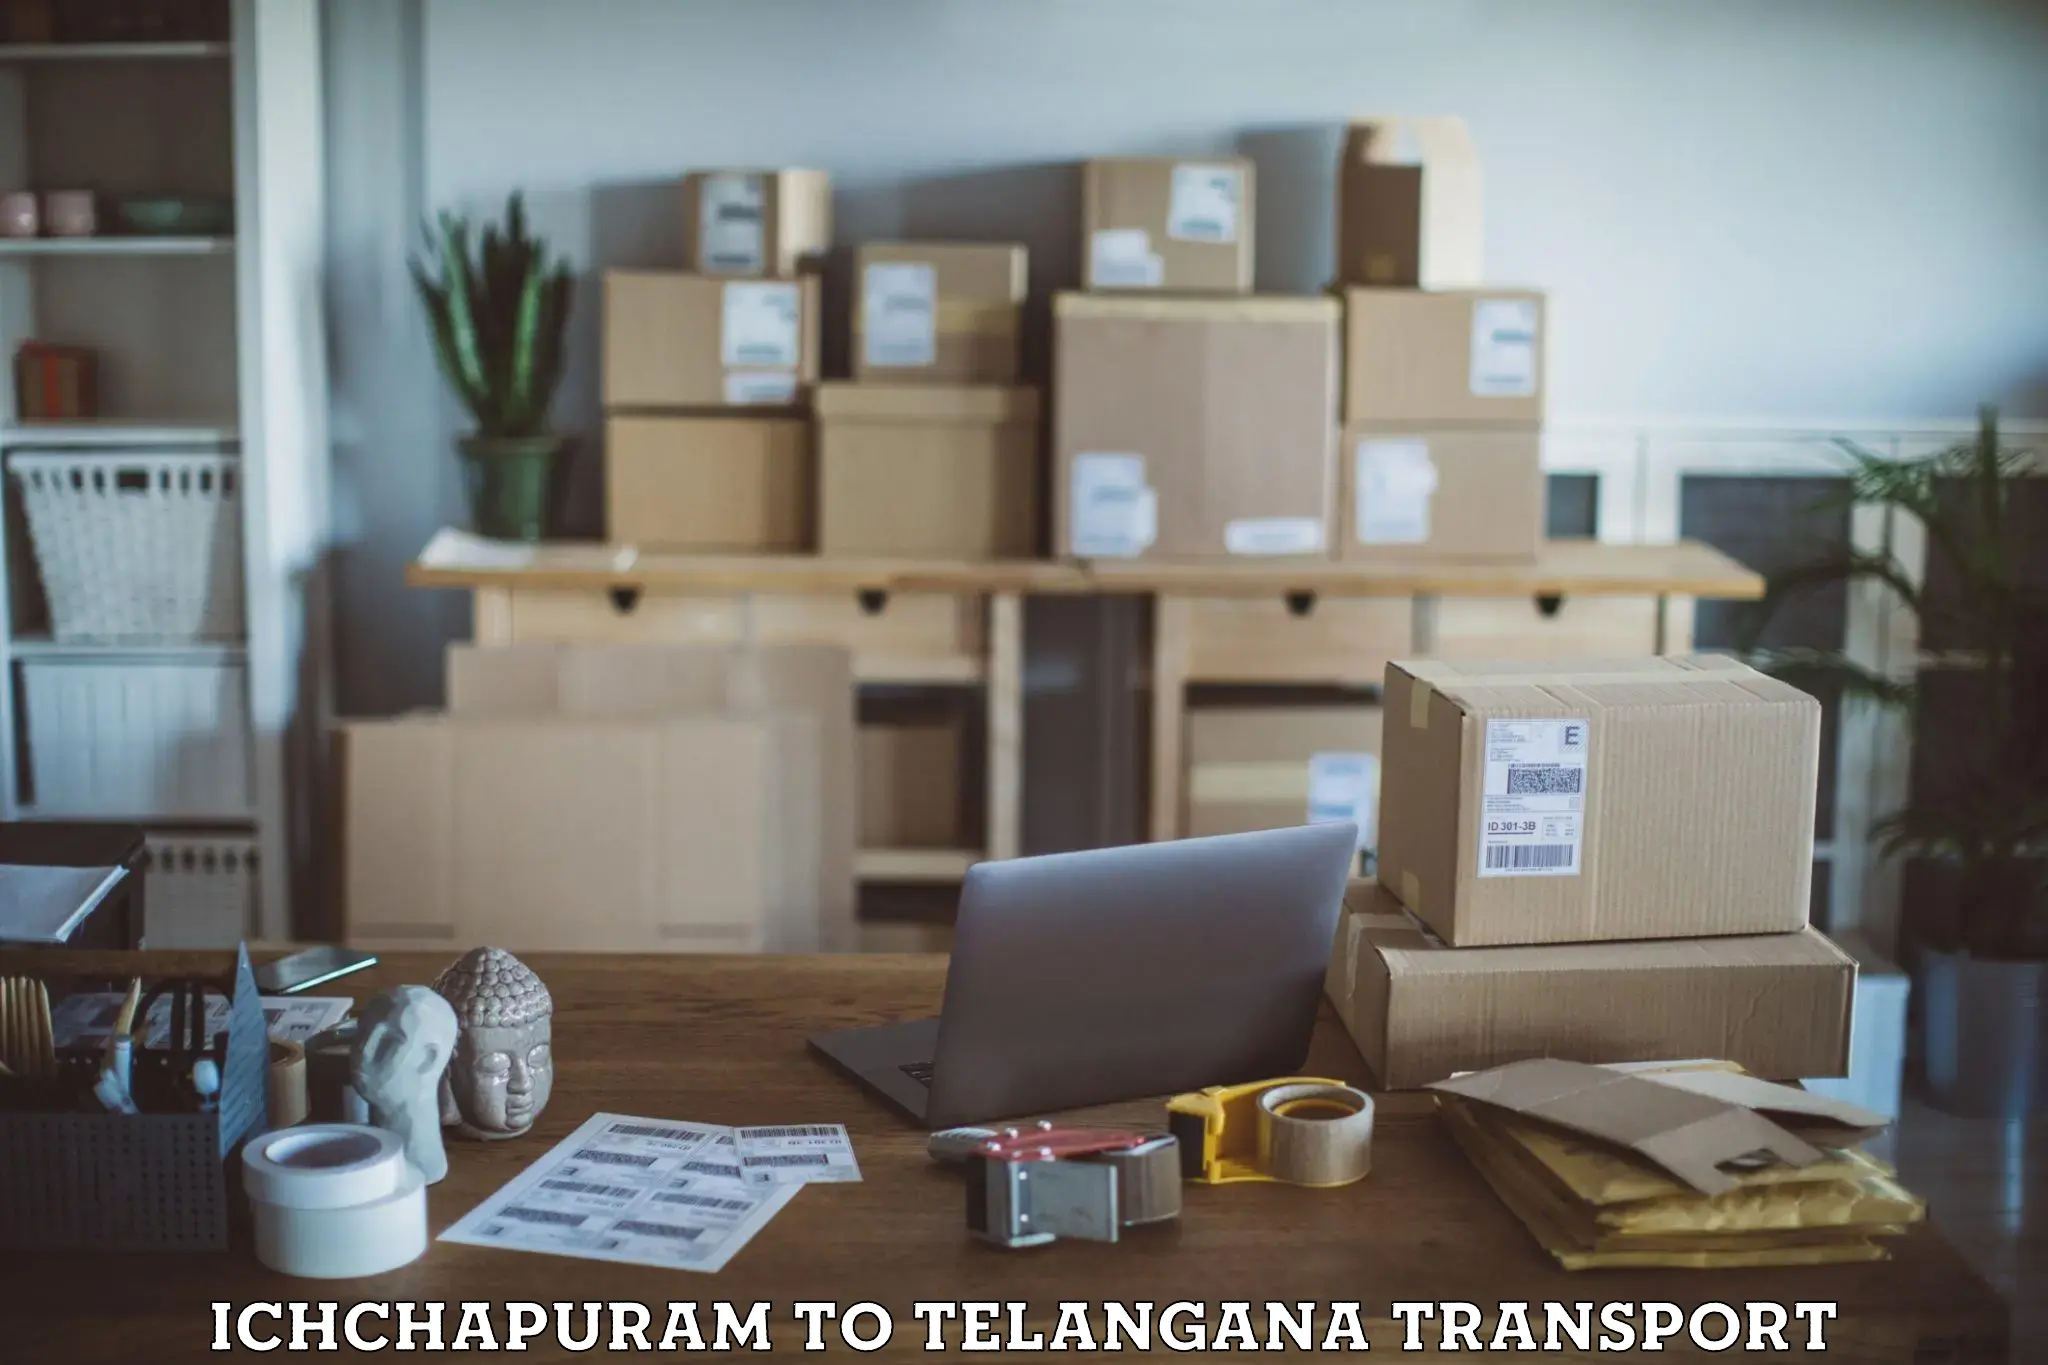 Container transport service Ichchapuram to Vikarabad